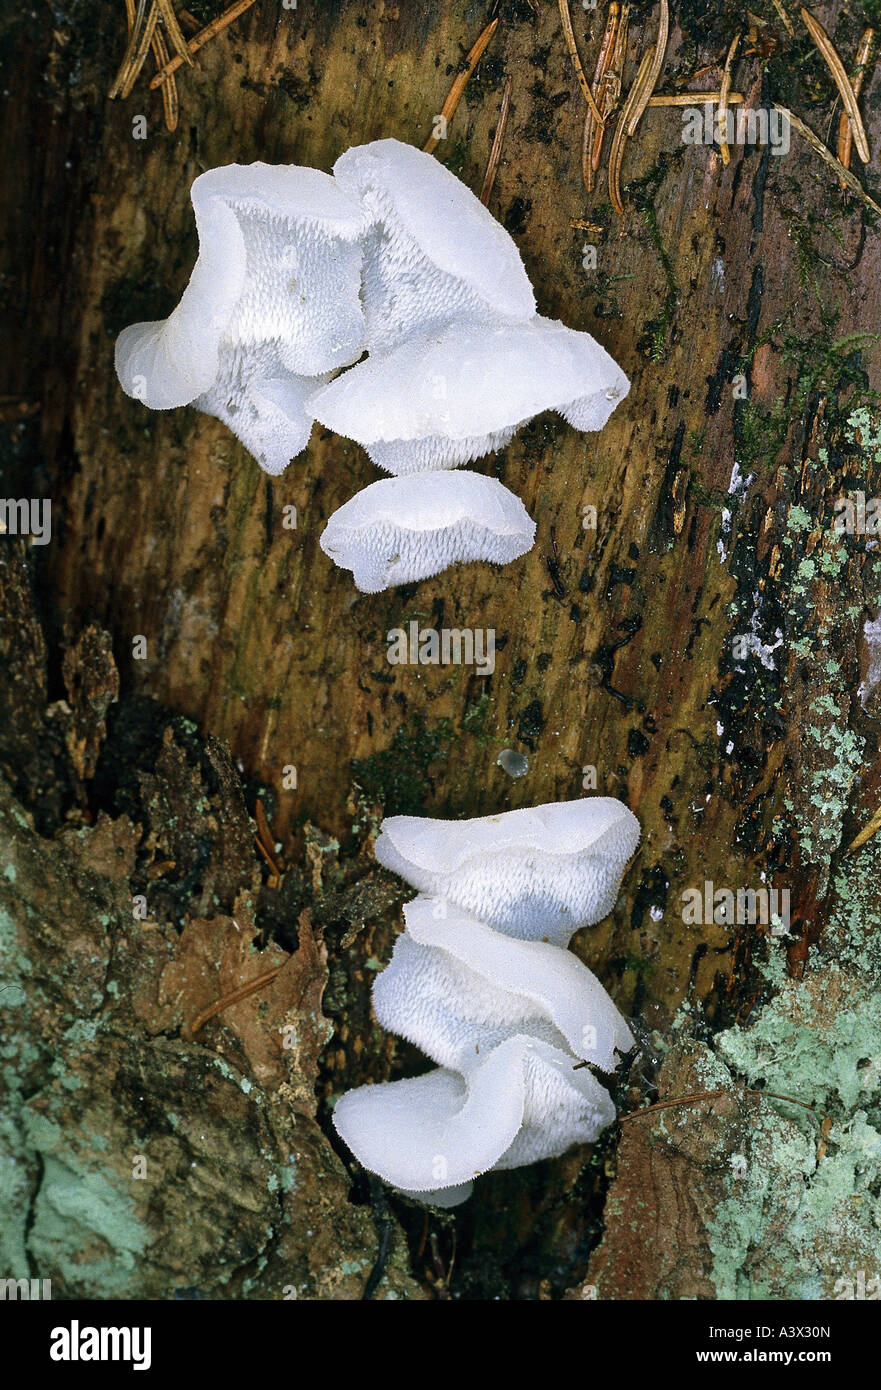 La botanique, champignons, Tremellodon gelatinosum, Tremella, au tronc de l'arbre, Pseudohydnum gelatinosum, mangeable, gelée de champignon, de fausses dents Banque D'Images